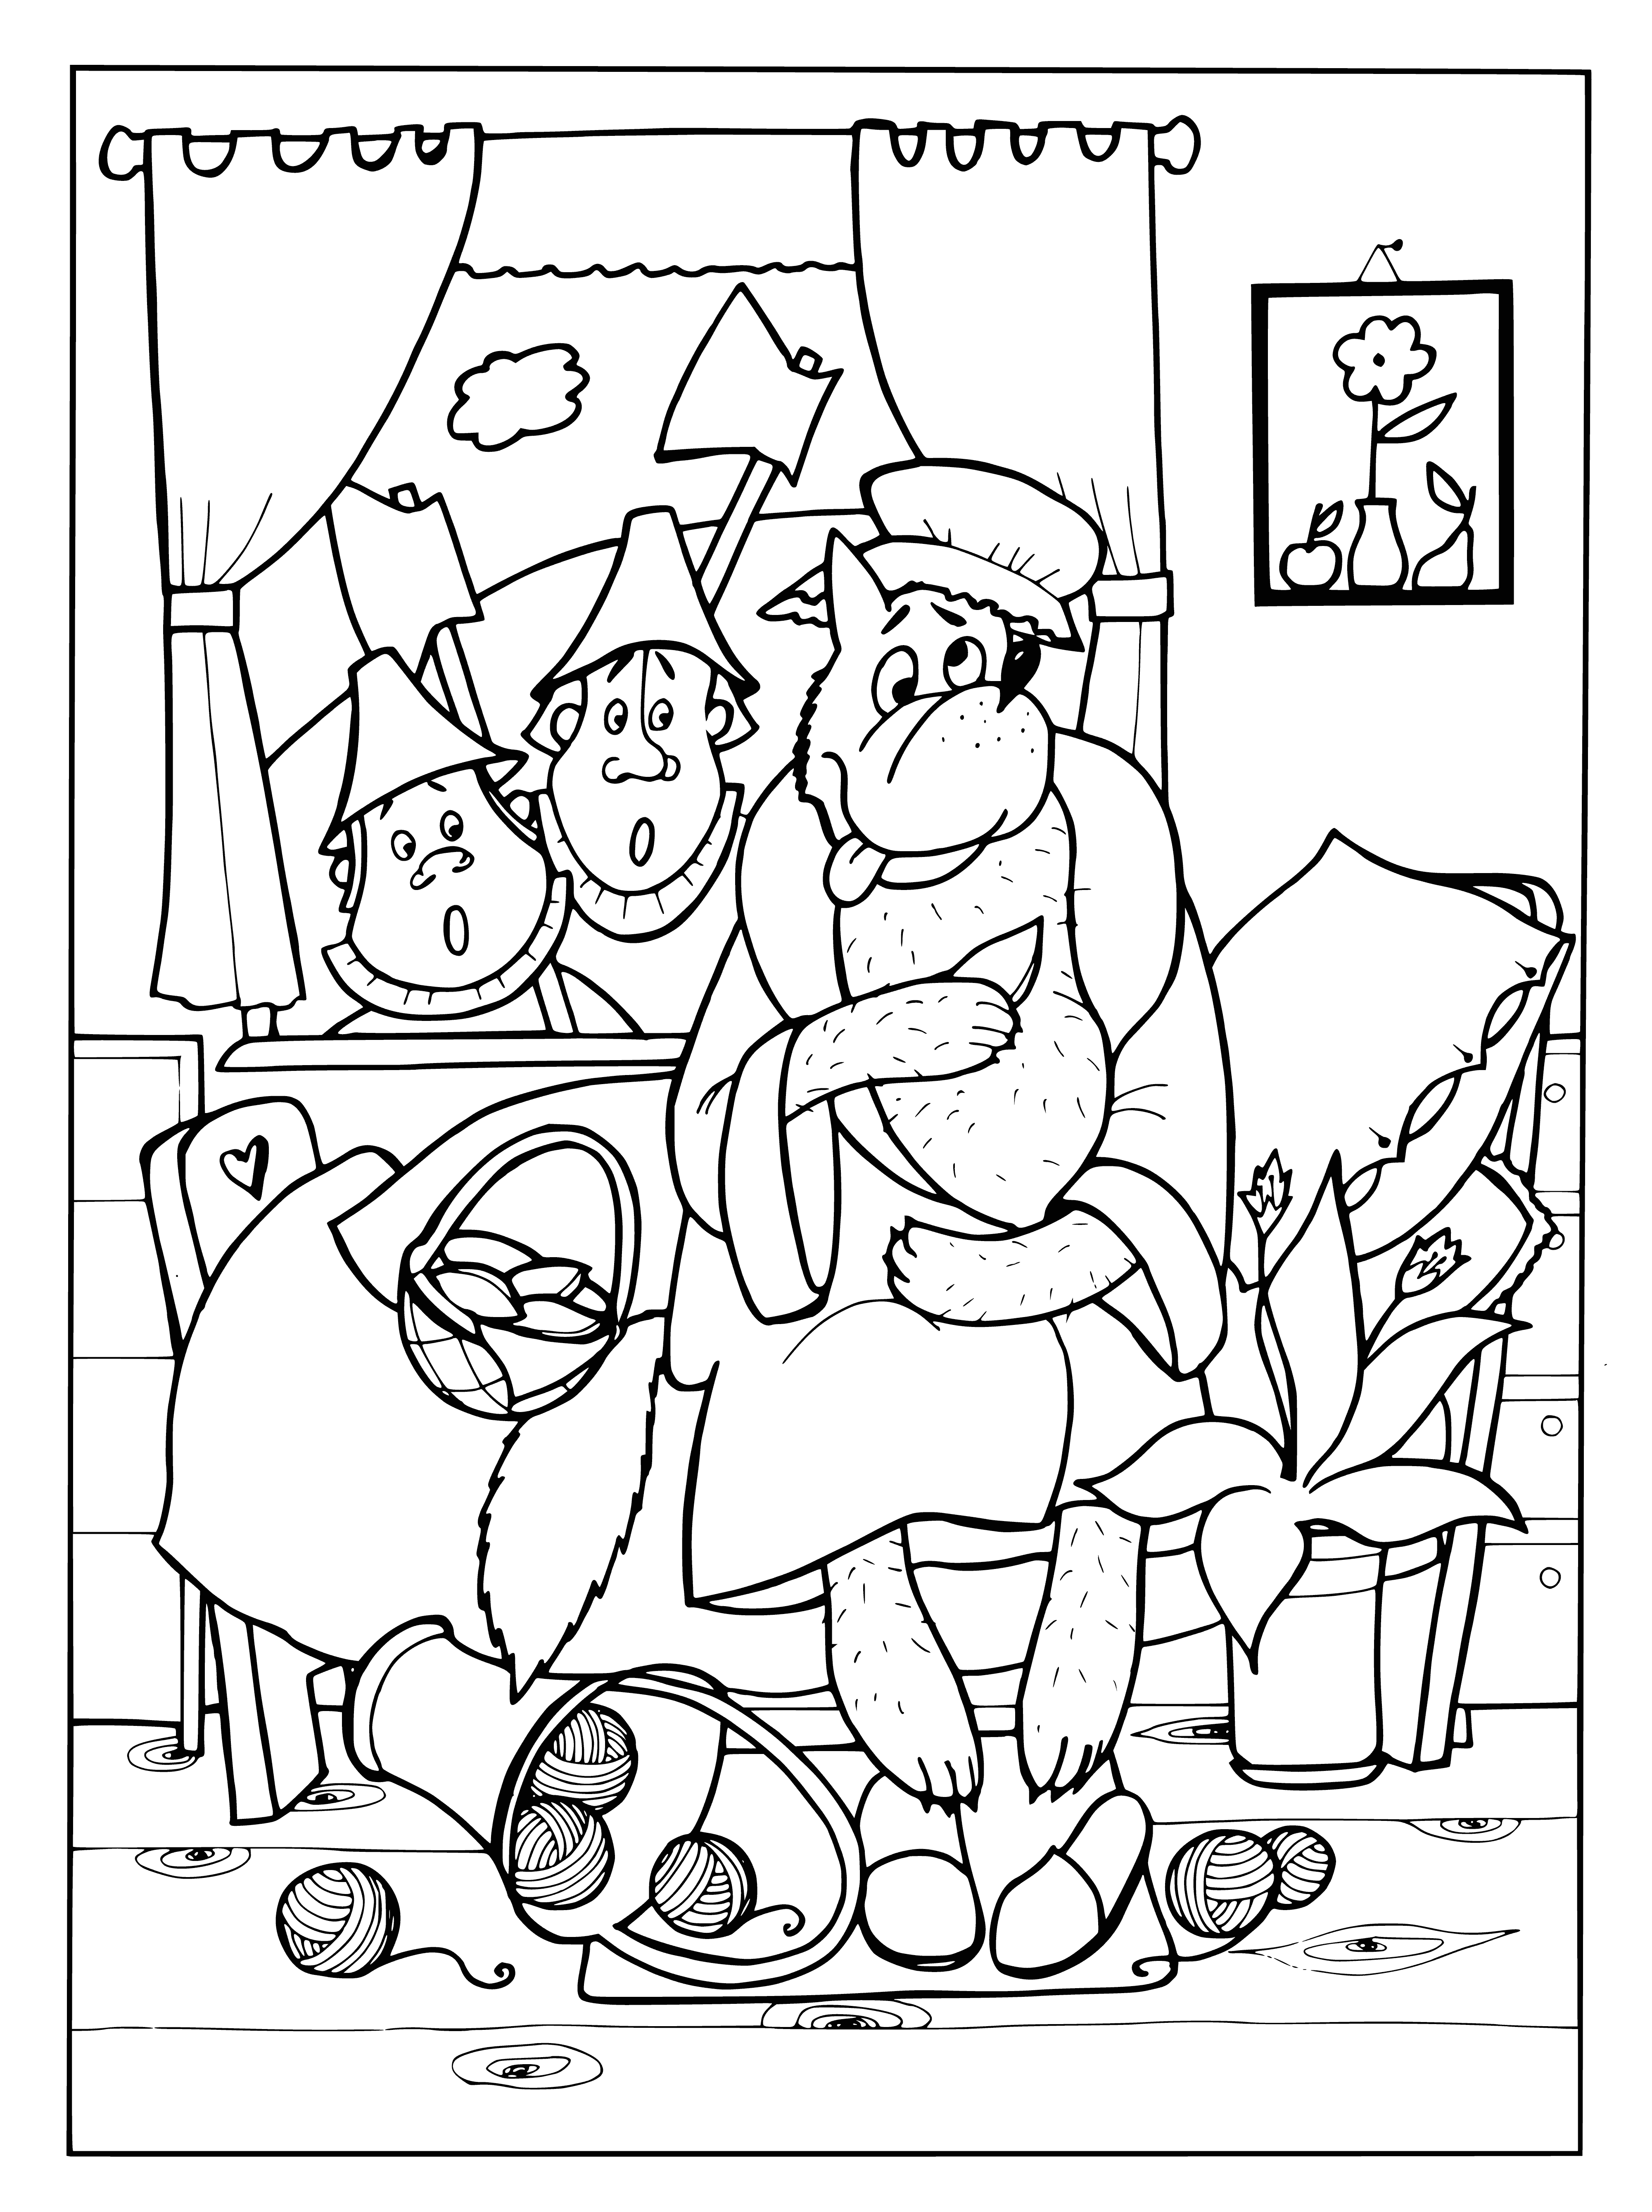 Lumberjacks coloring page